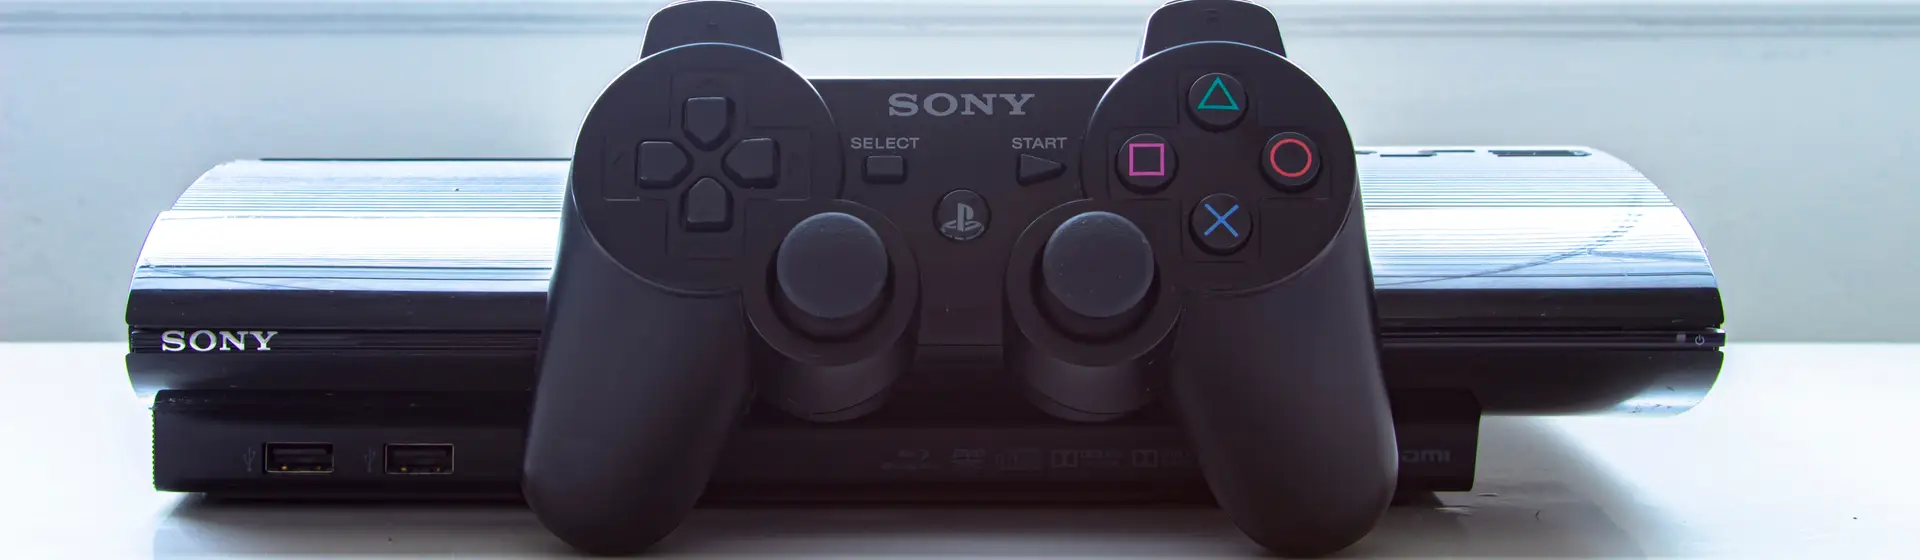 Console e controle do PS3 usado como destaque na imagem